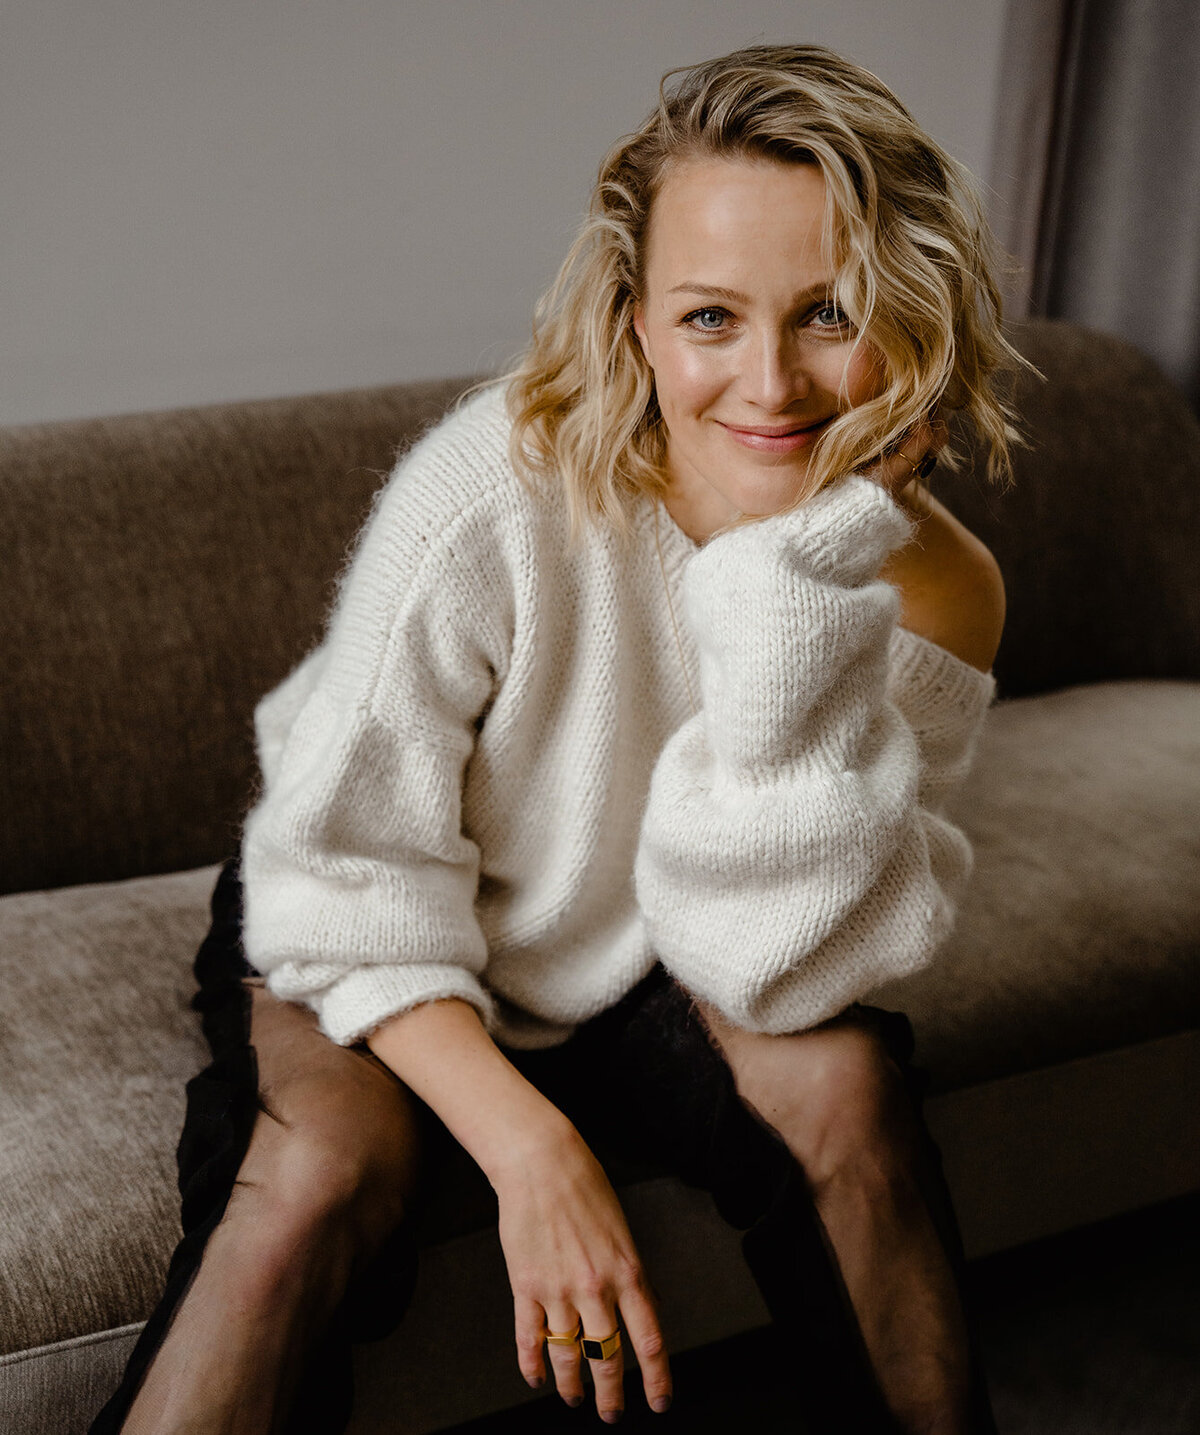 Portret van Tess Milne in een witte trui. Ze zit op een bank en kijkt lachend de camera in